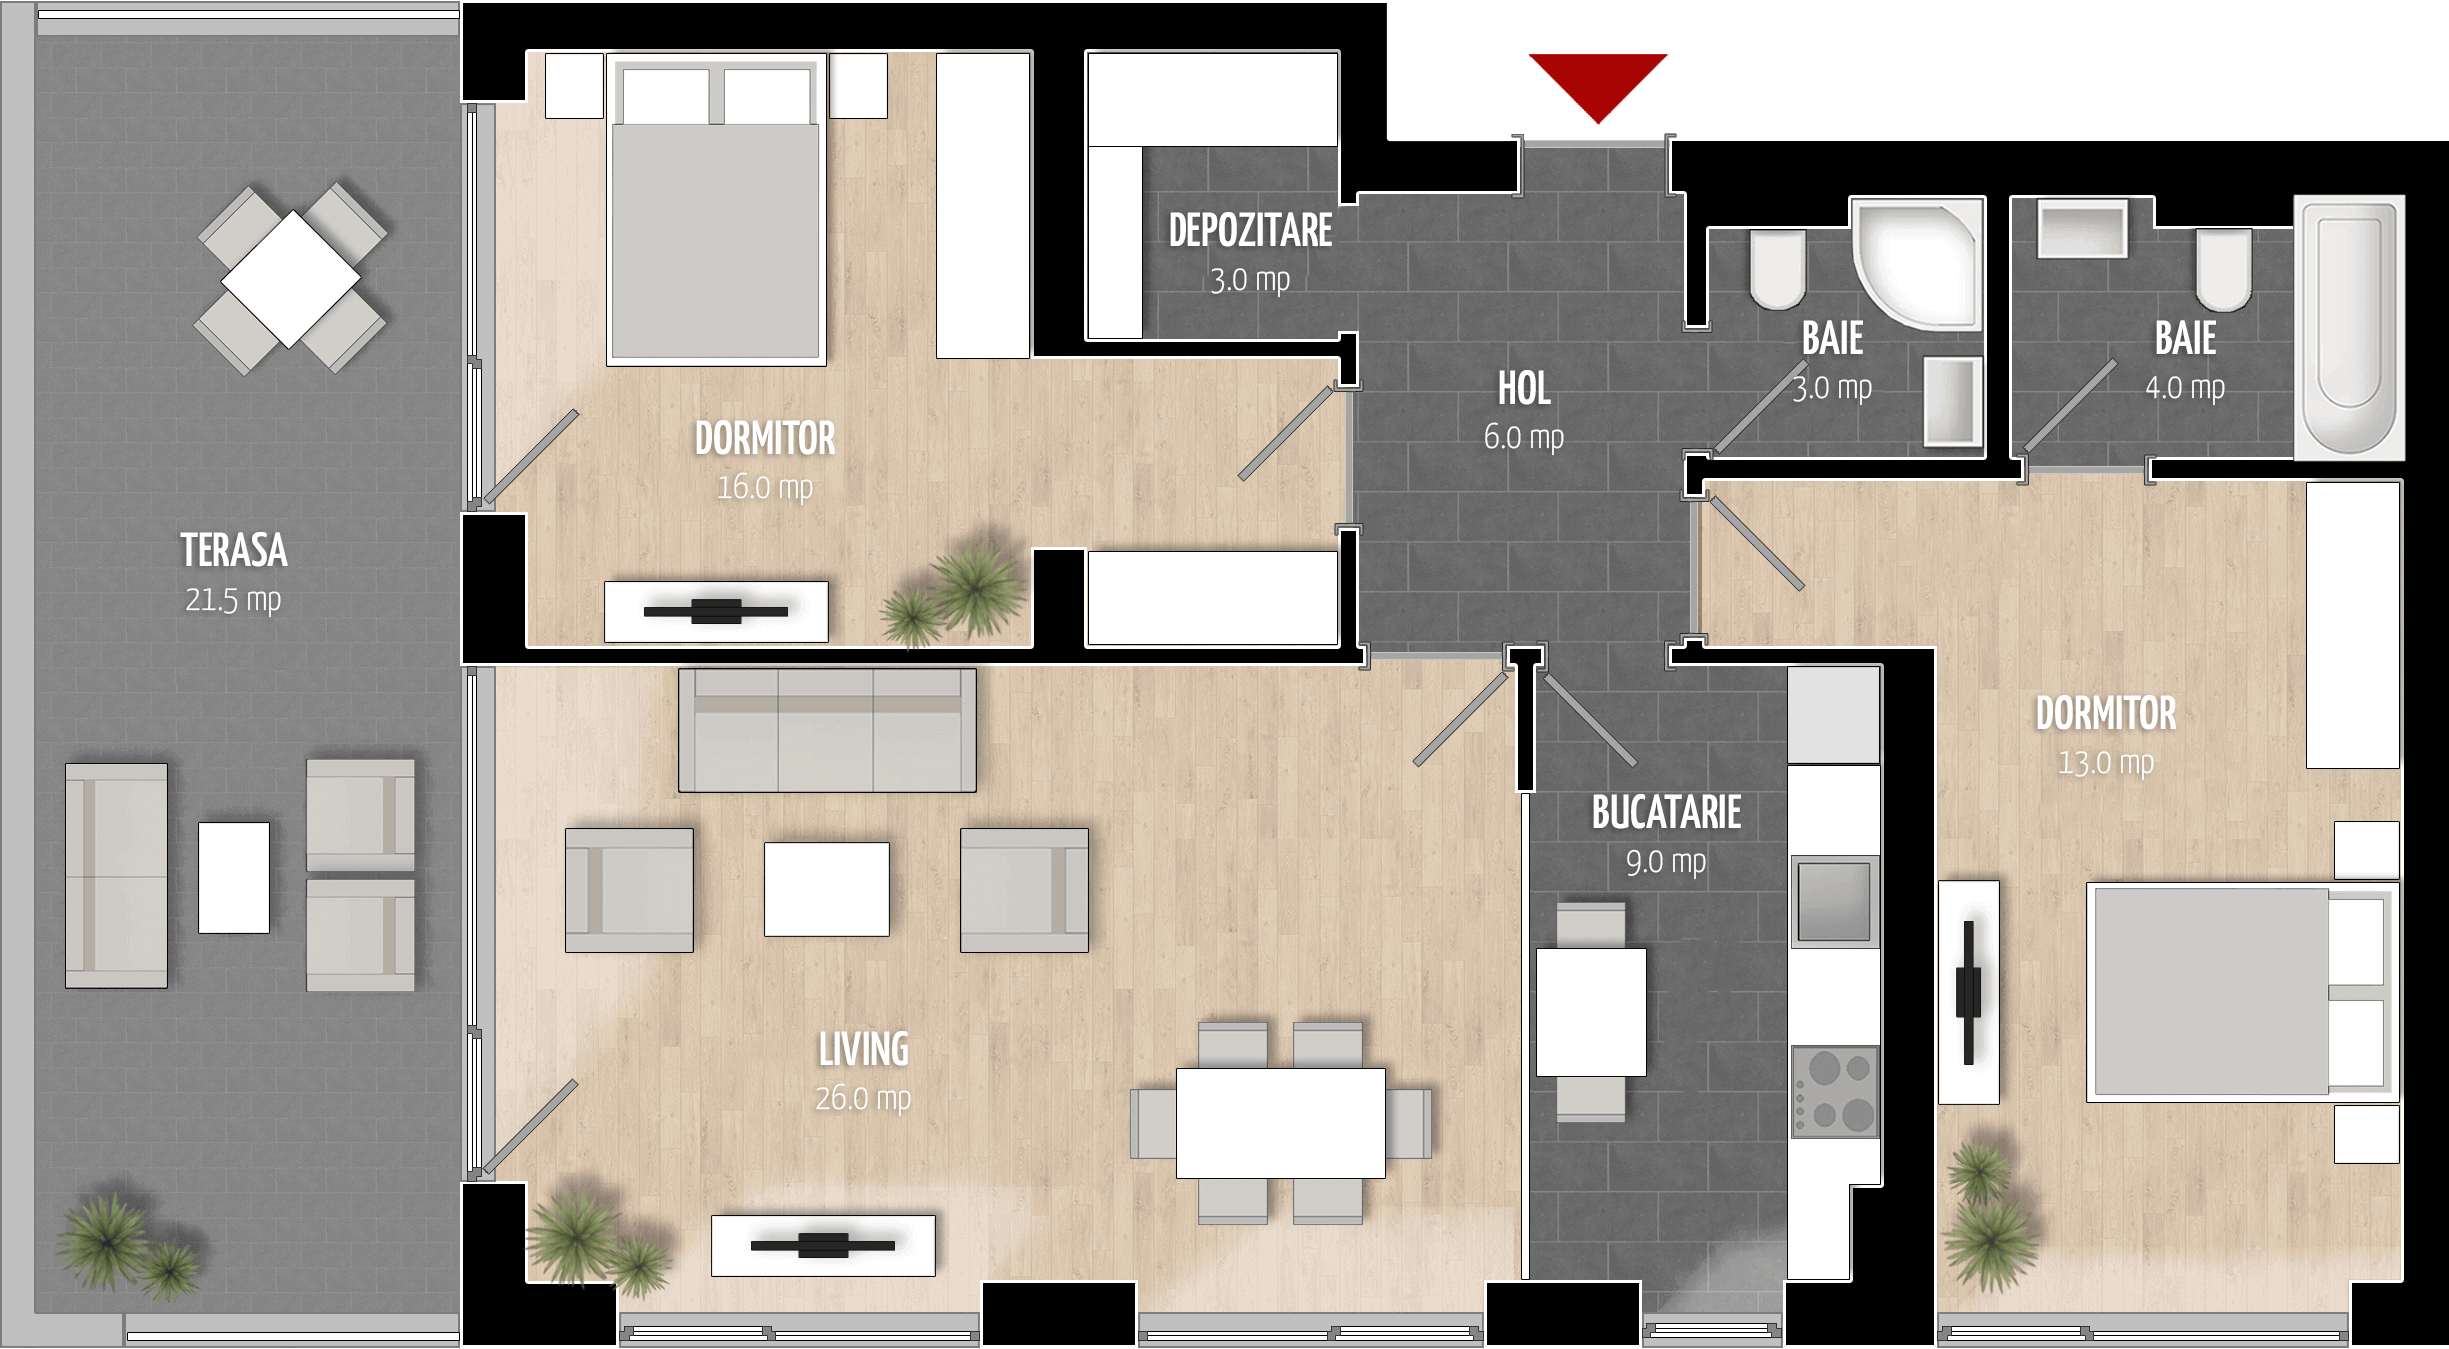  Apartament 902, Tip de apartament 3B cu 3 camere 